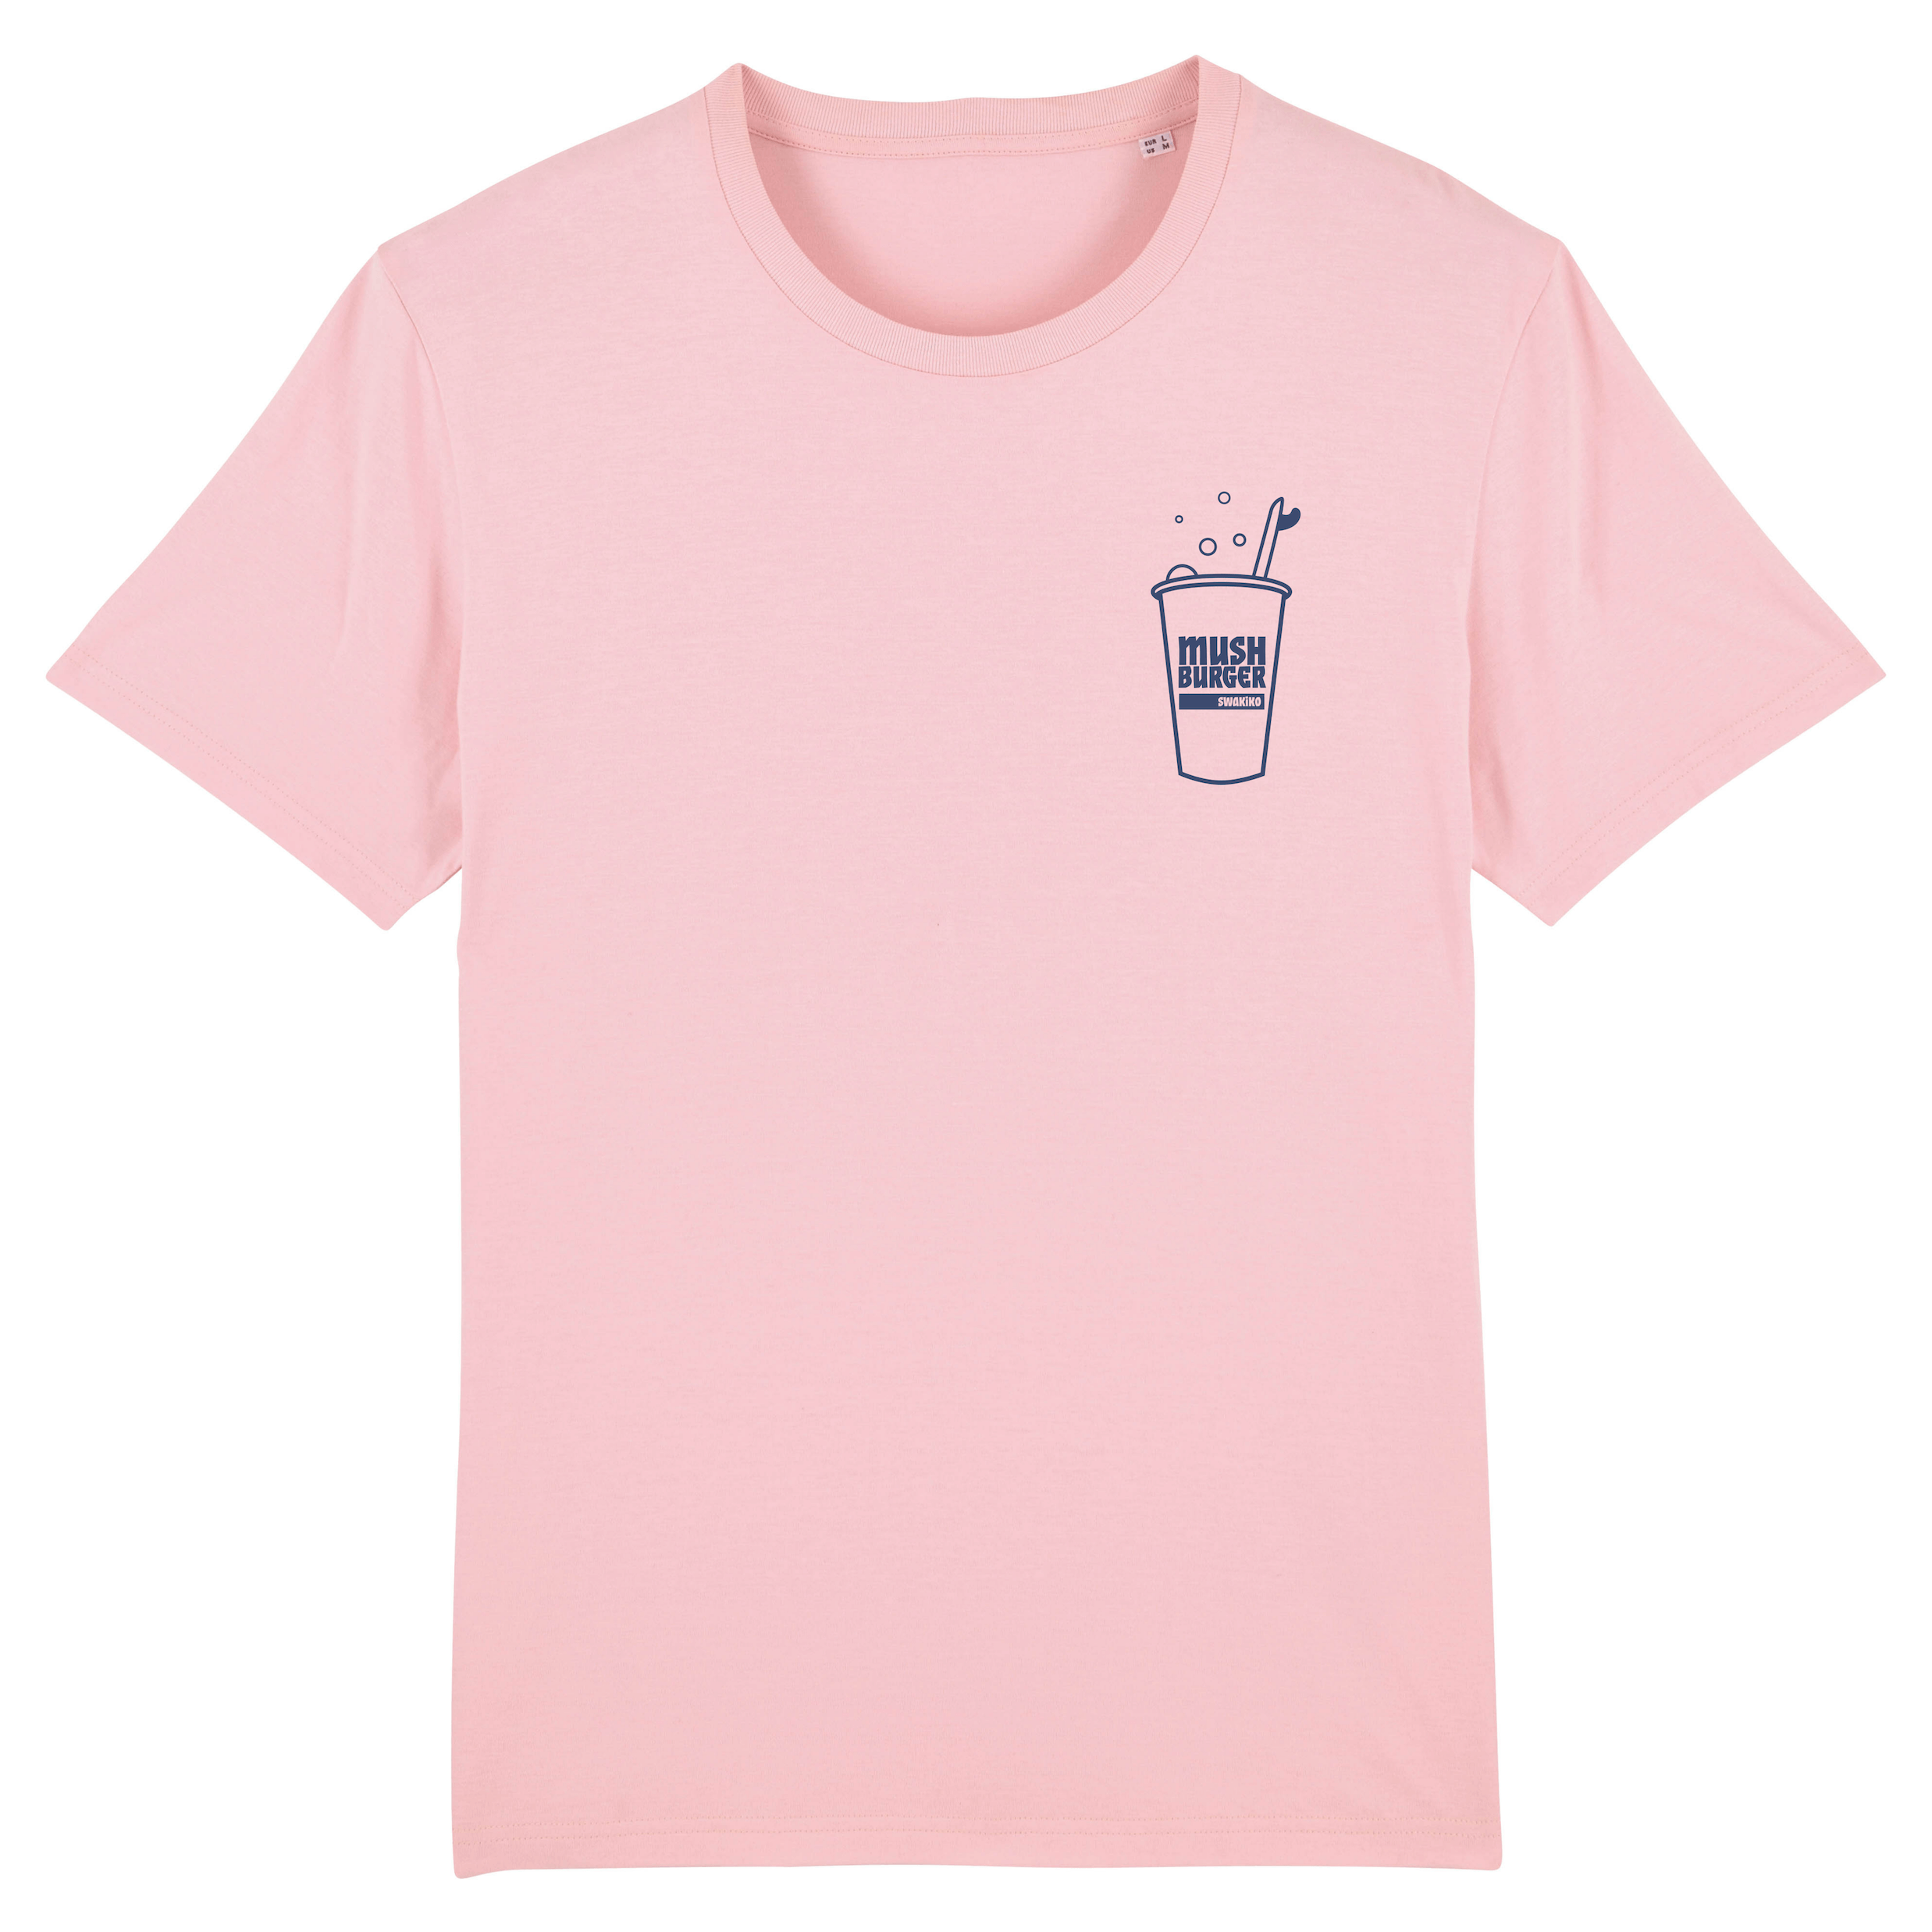 Pink mush burger surf T-shirt, front